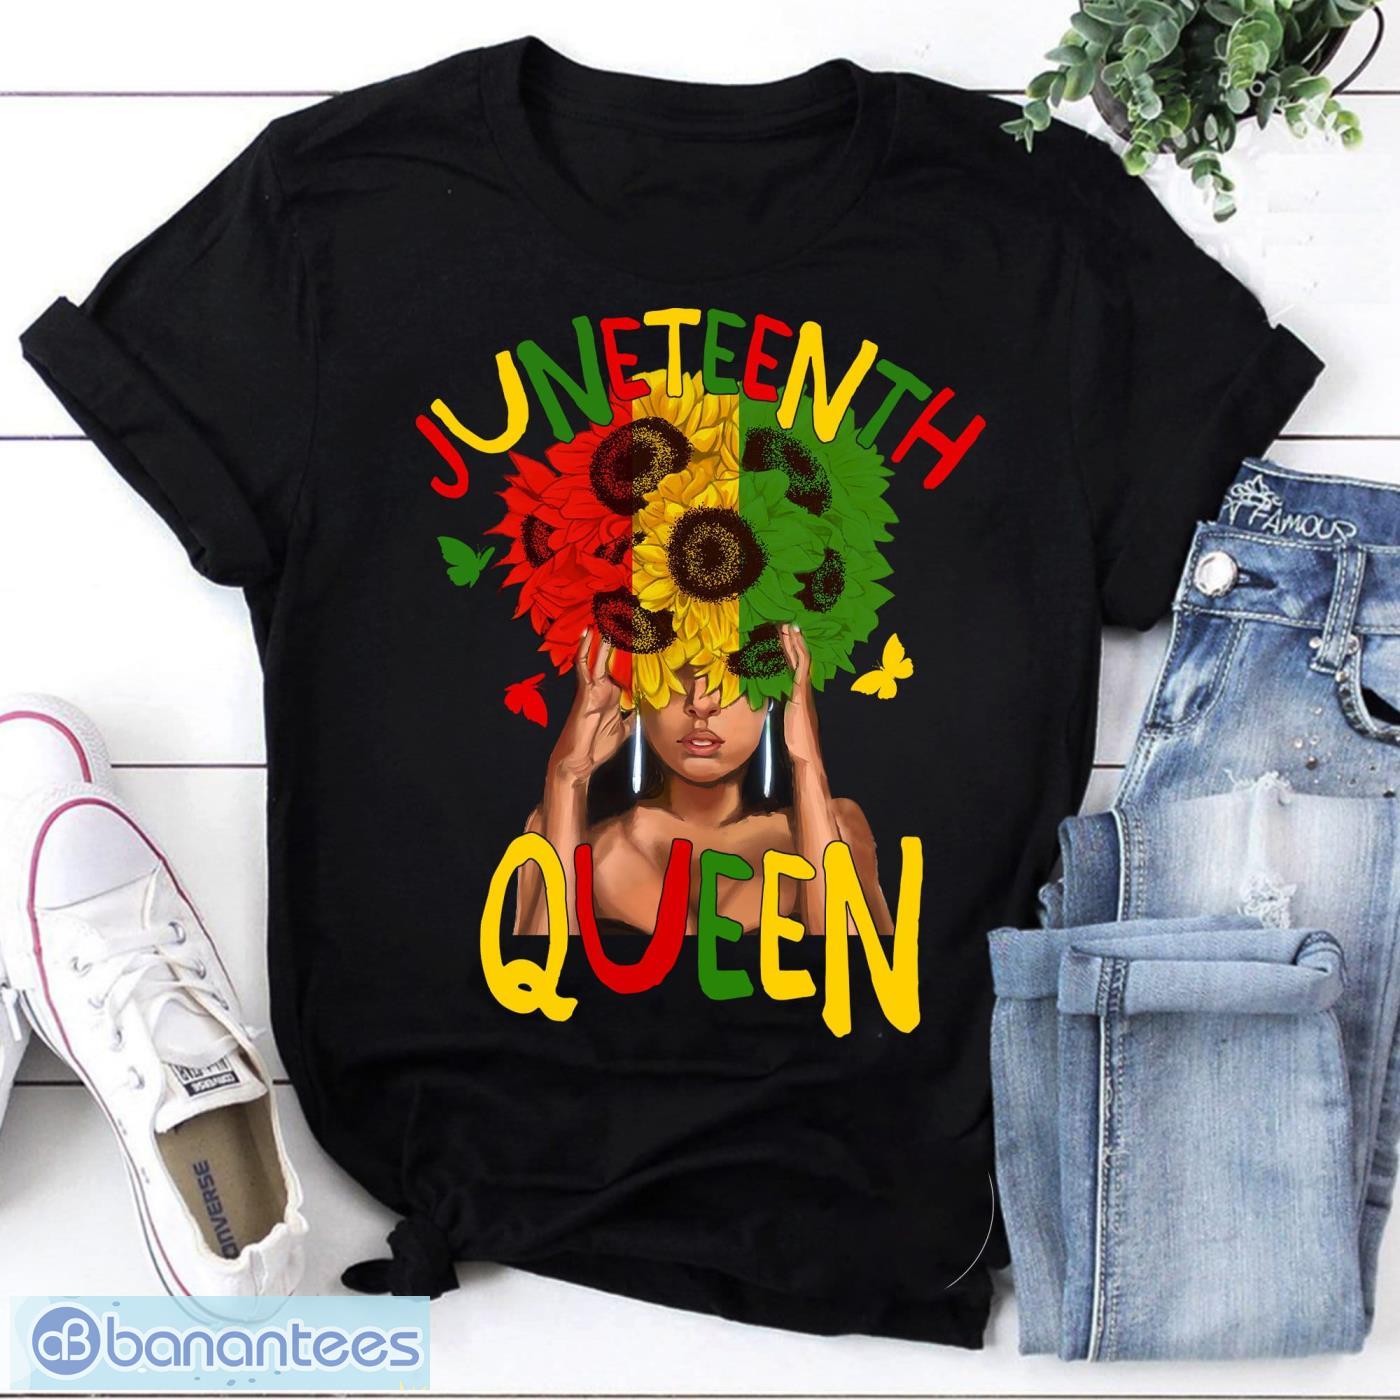 Juneteenth Queen Black Woman Vintage T-Shirt Juneteenth Shirt Product Photo 1